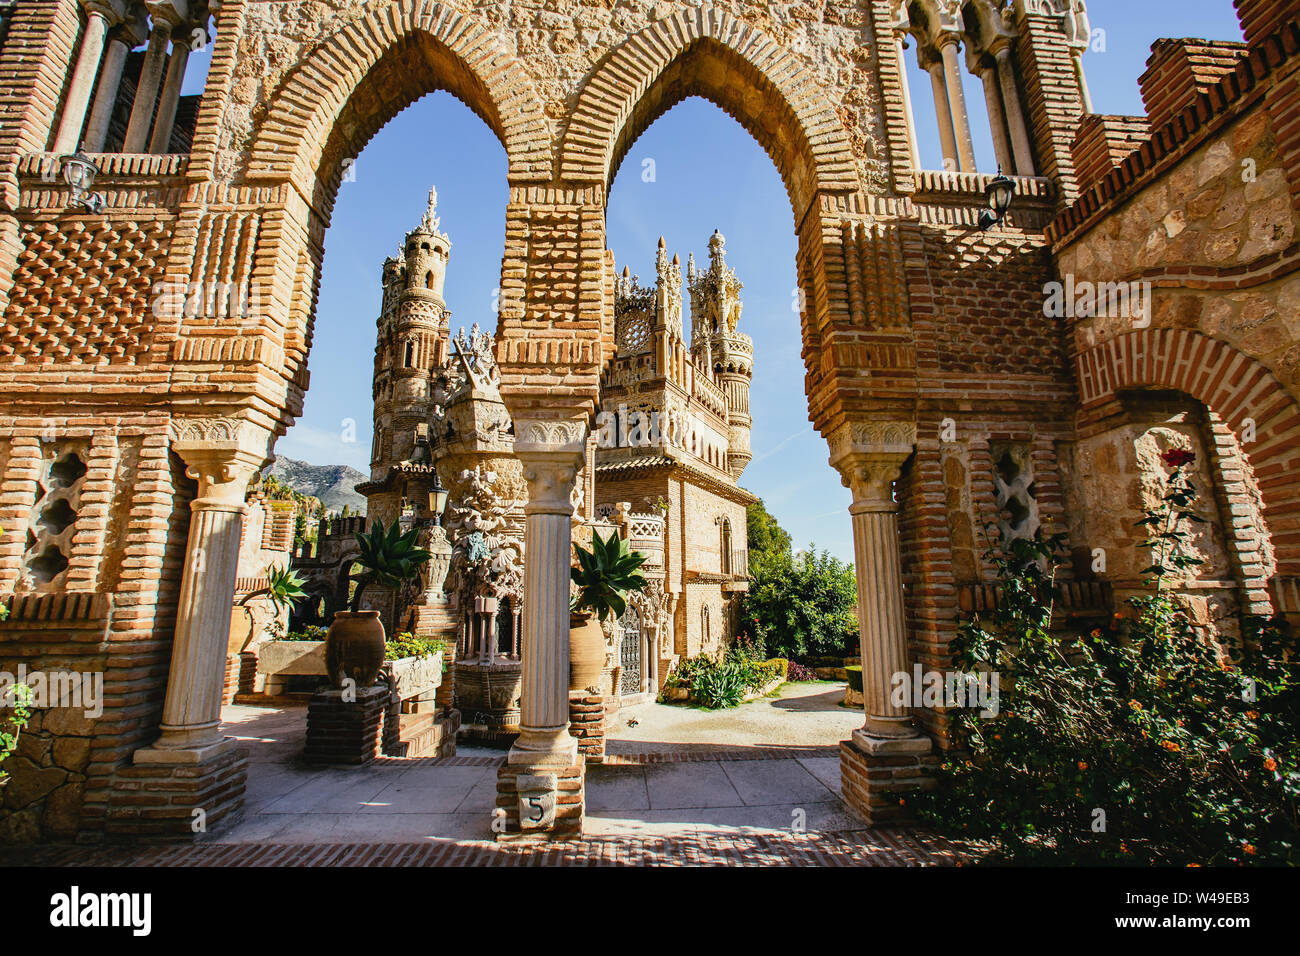 View through arches of Castillo de Colomares Stock Photo